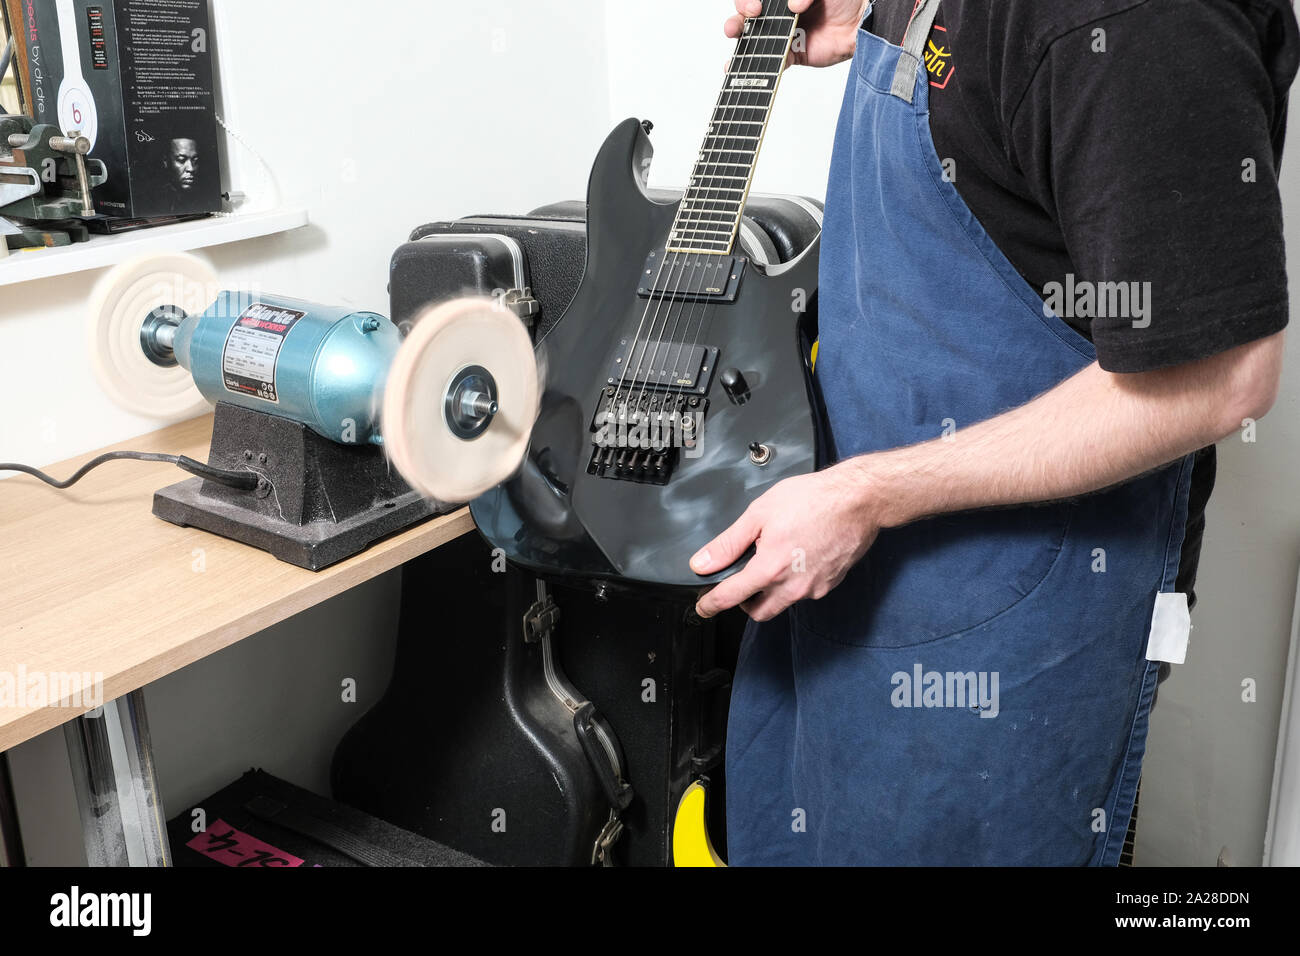 Un tecnico di chitarra o tech nella sua bottega utilizzando una macchina di lucidatura per lucidare il corpo di una stratocaster chitarra elettrica Foto Stock